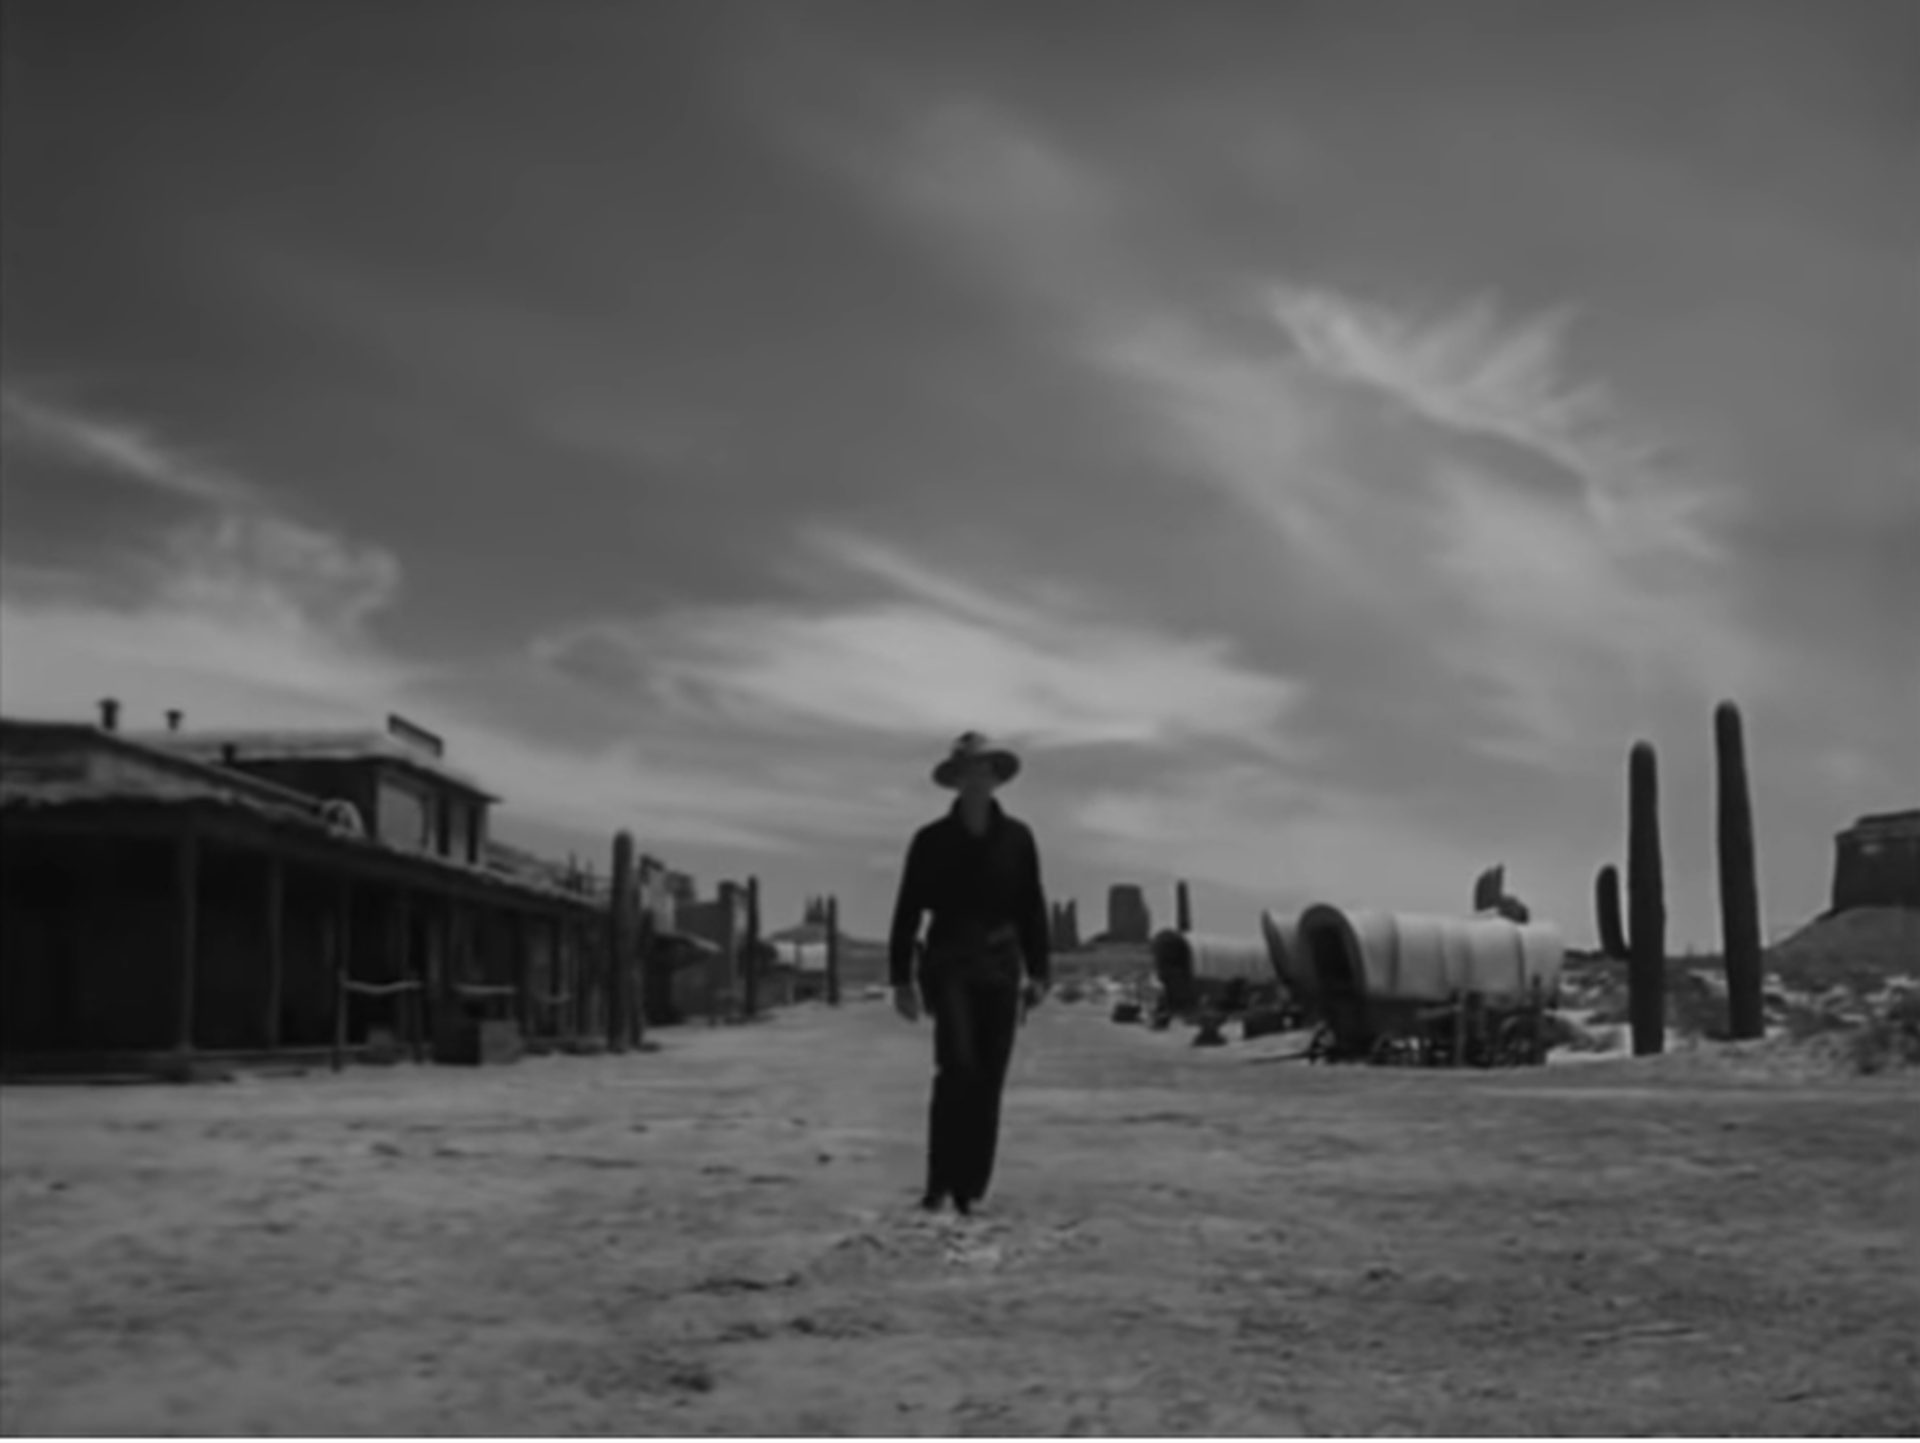 Wyatt Earp schreitet allein auf die Kamera zu, im Hintergrund mit spektakulärem Himmel befinden sich die flachen Gebäude einer Kleinstadt, Planwagen und Felsen des Monument Valley